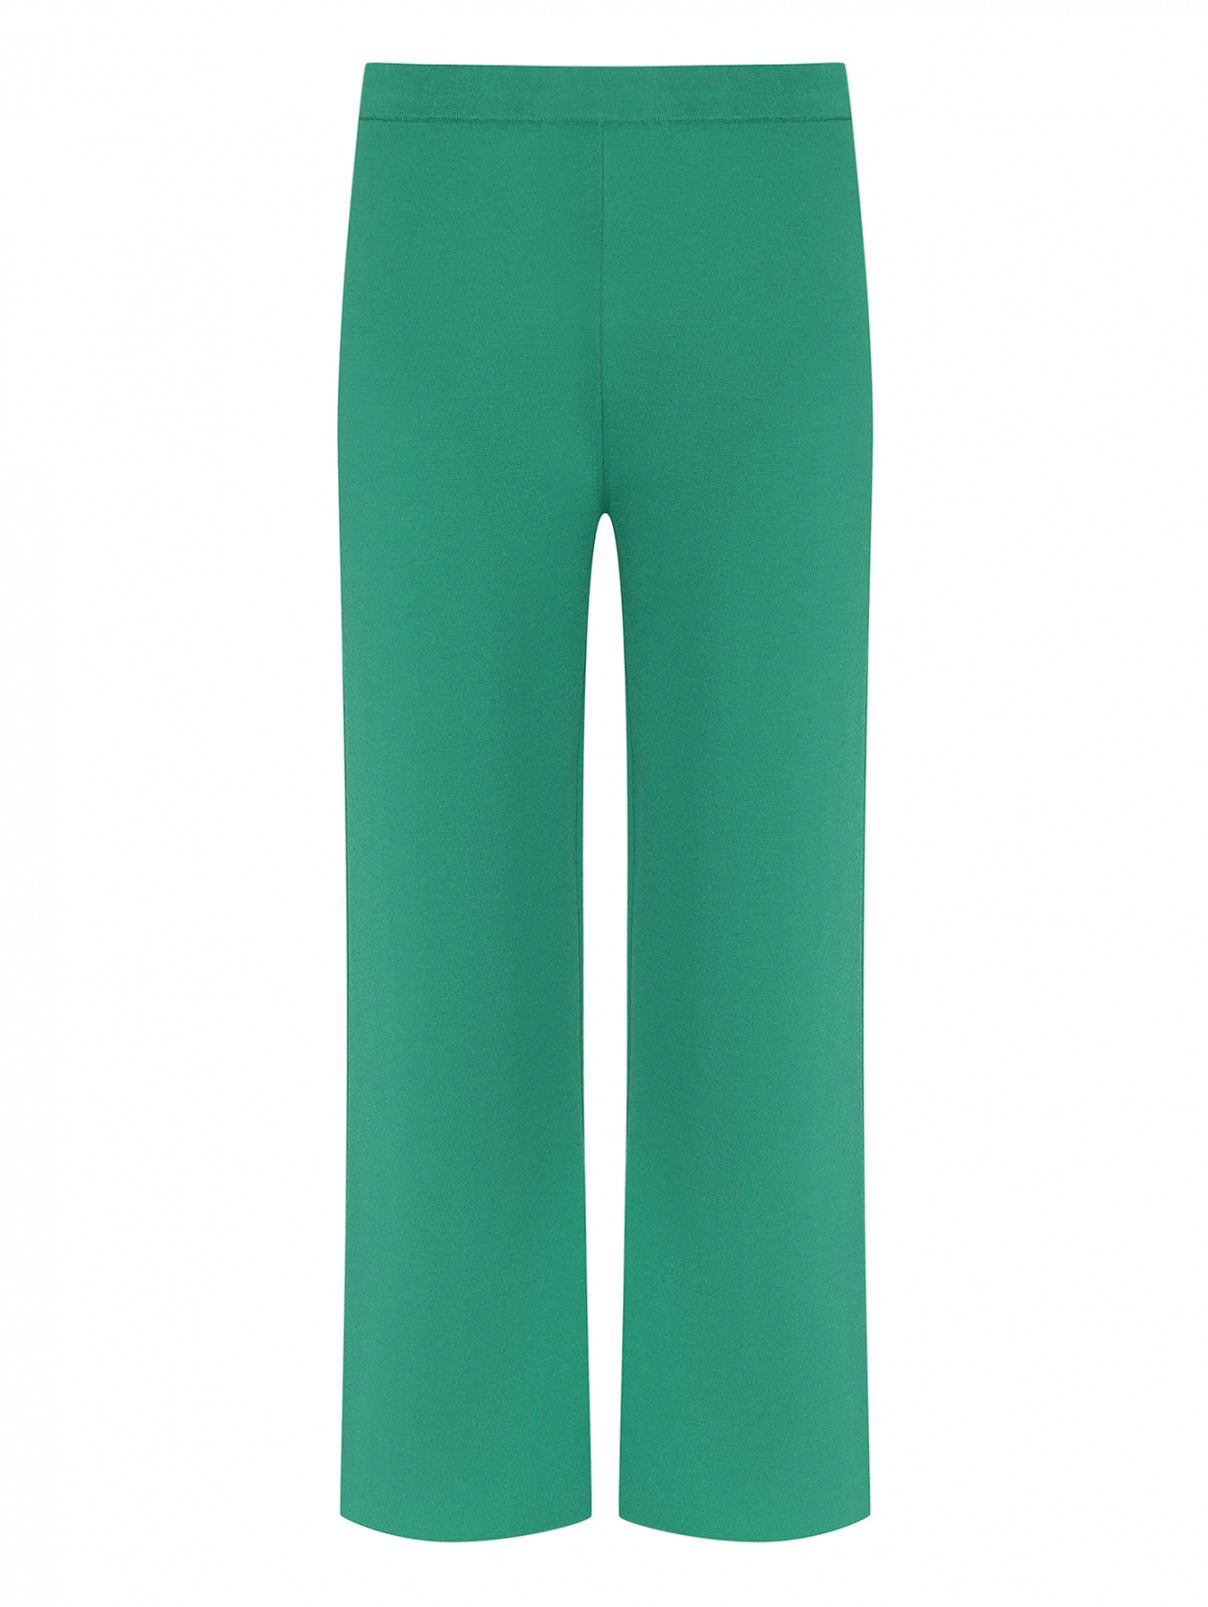 Трикотажные однотонные брюки Max Mara  –  Общий вид  – Цвет:  Зеленый